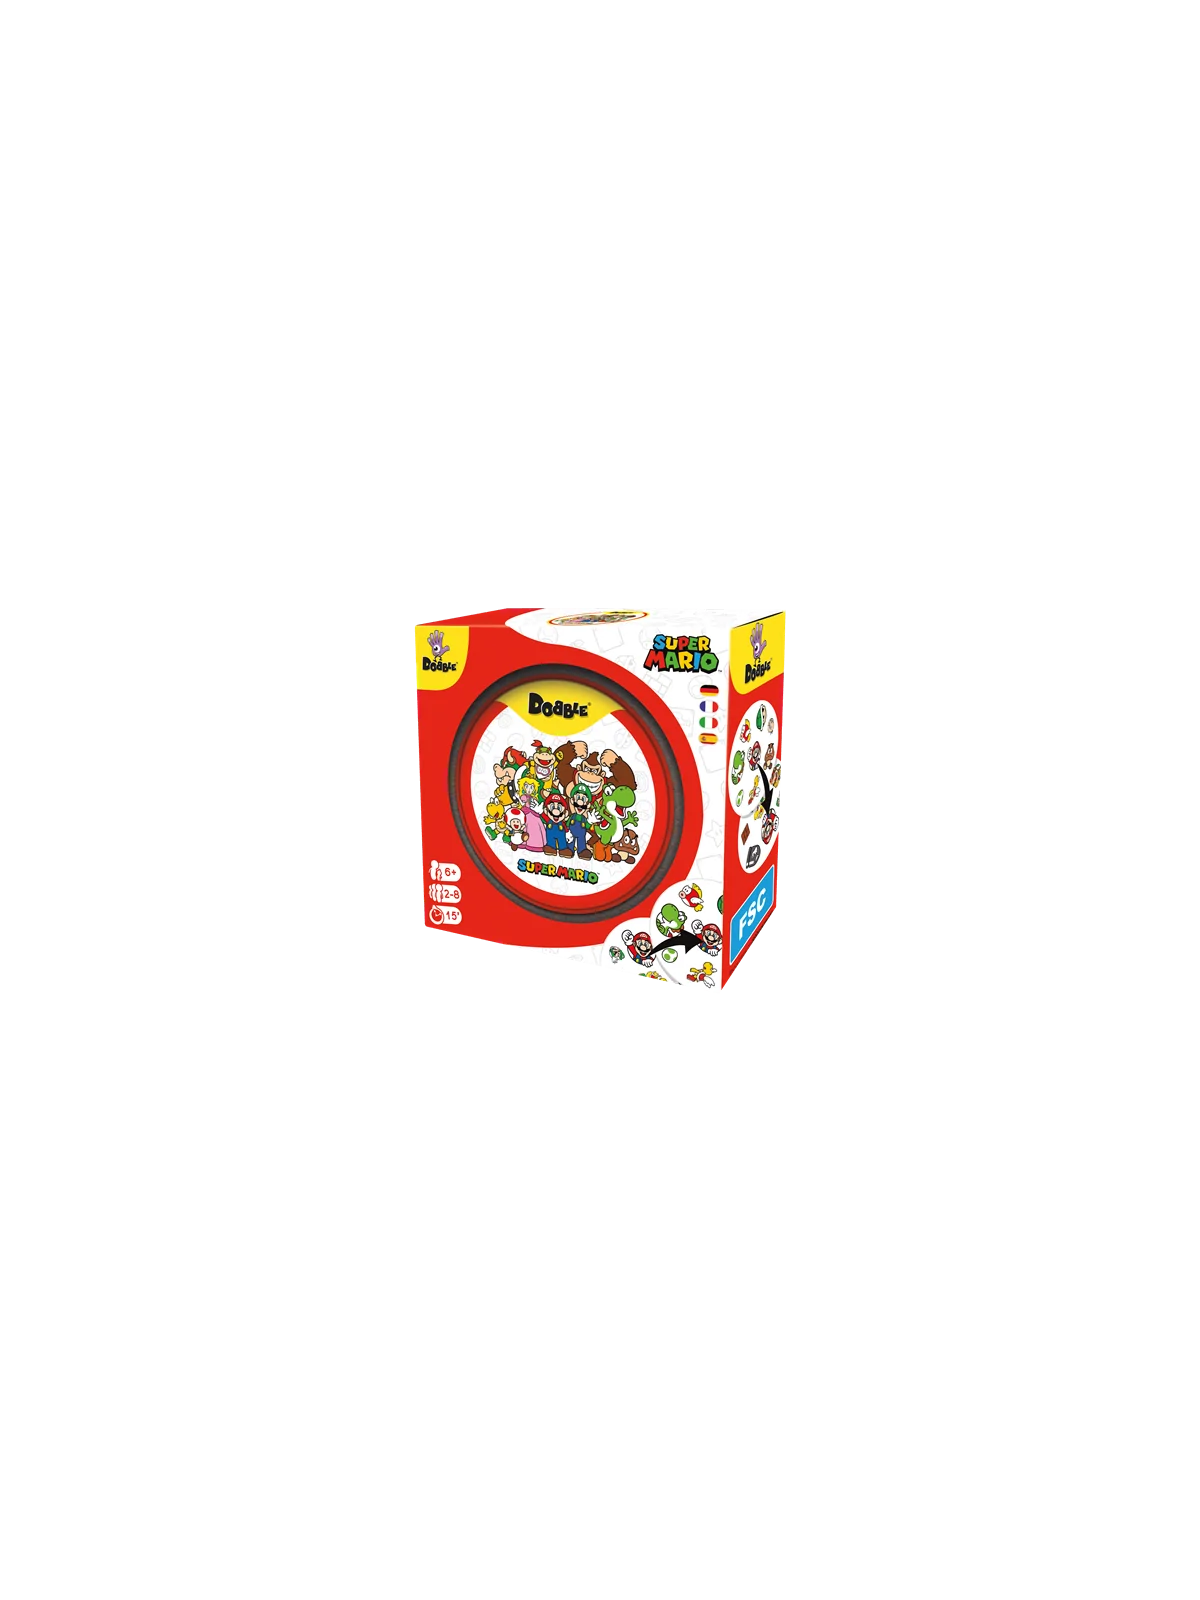 Comprar Dobble Super Mario barato al mejor precio 16,99 € de Zygomatic